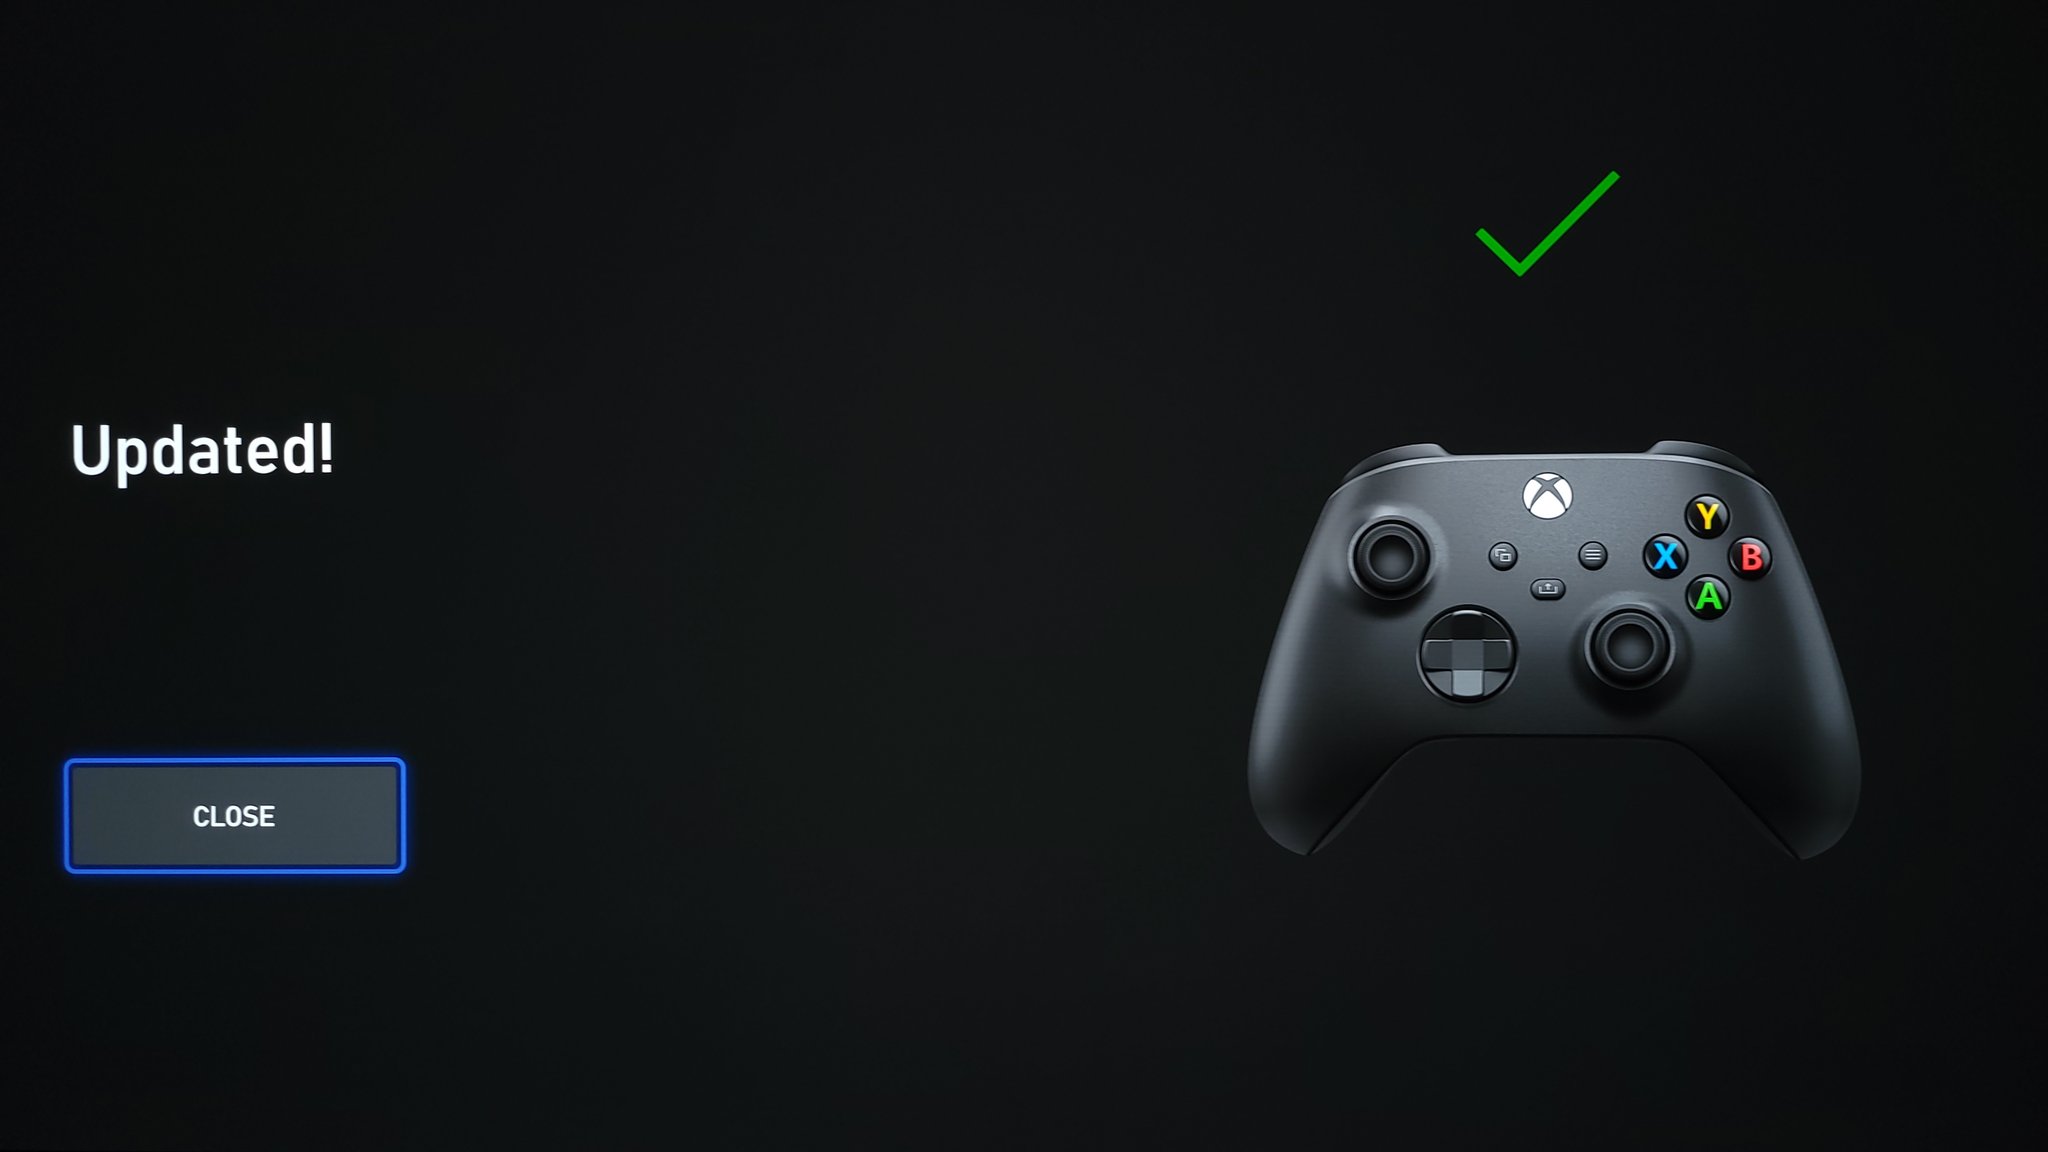 Геймпад Xbox получил обновление прошивки, пока для инсайдеров